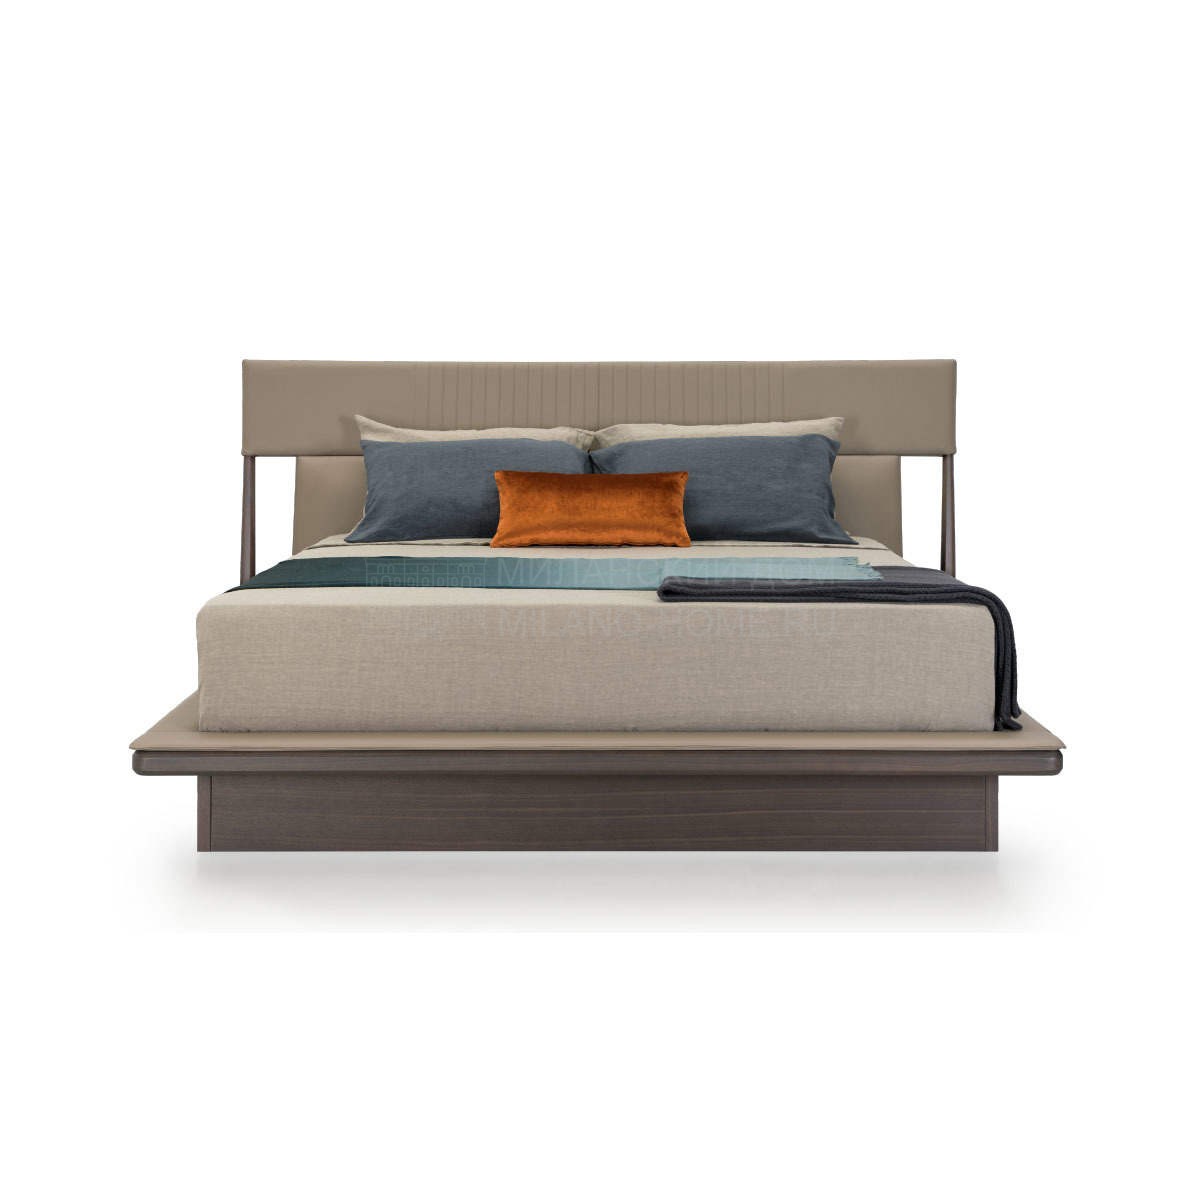 Двуспальная кровать Vine bed из Италии фабрики TURRI